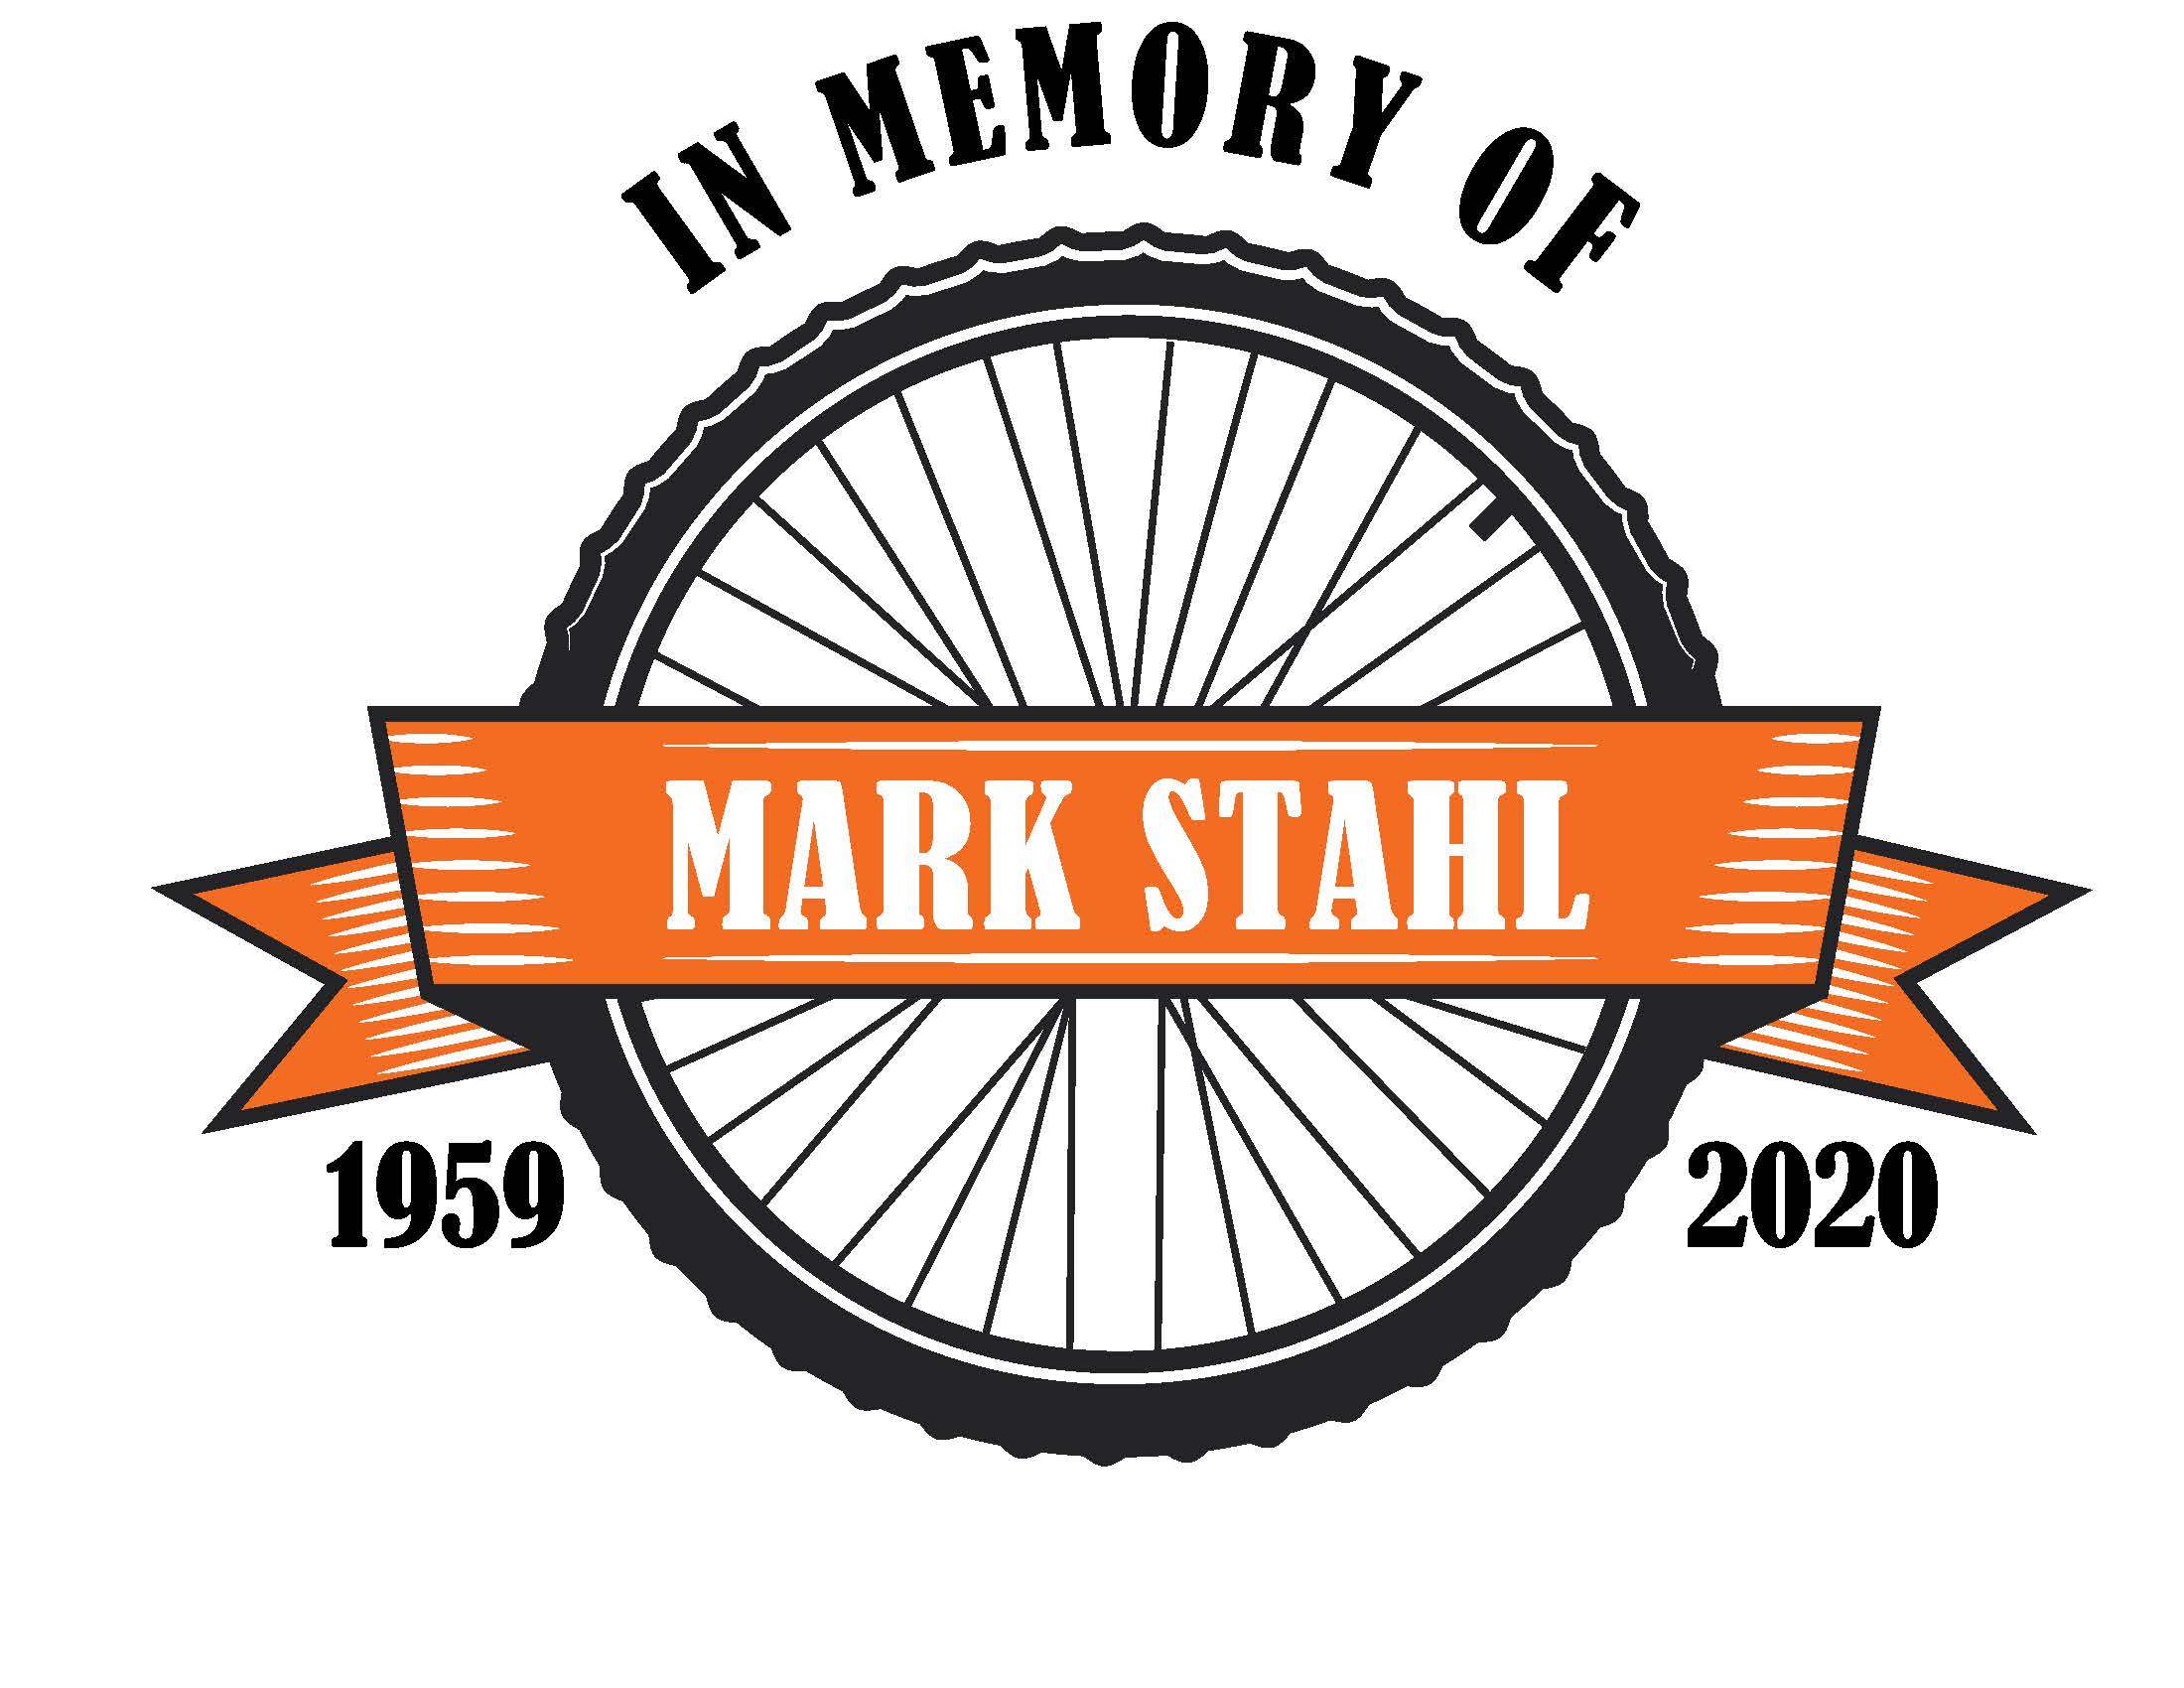 Stahl Family - In Memory of Mark Stahl